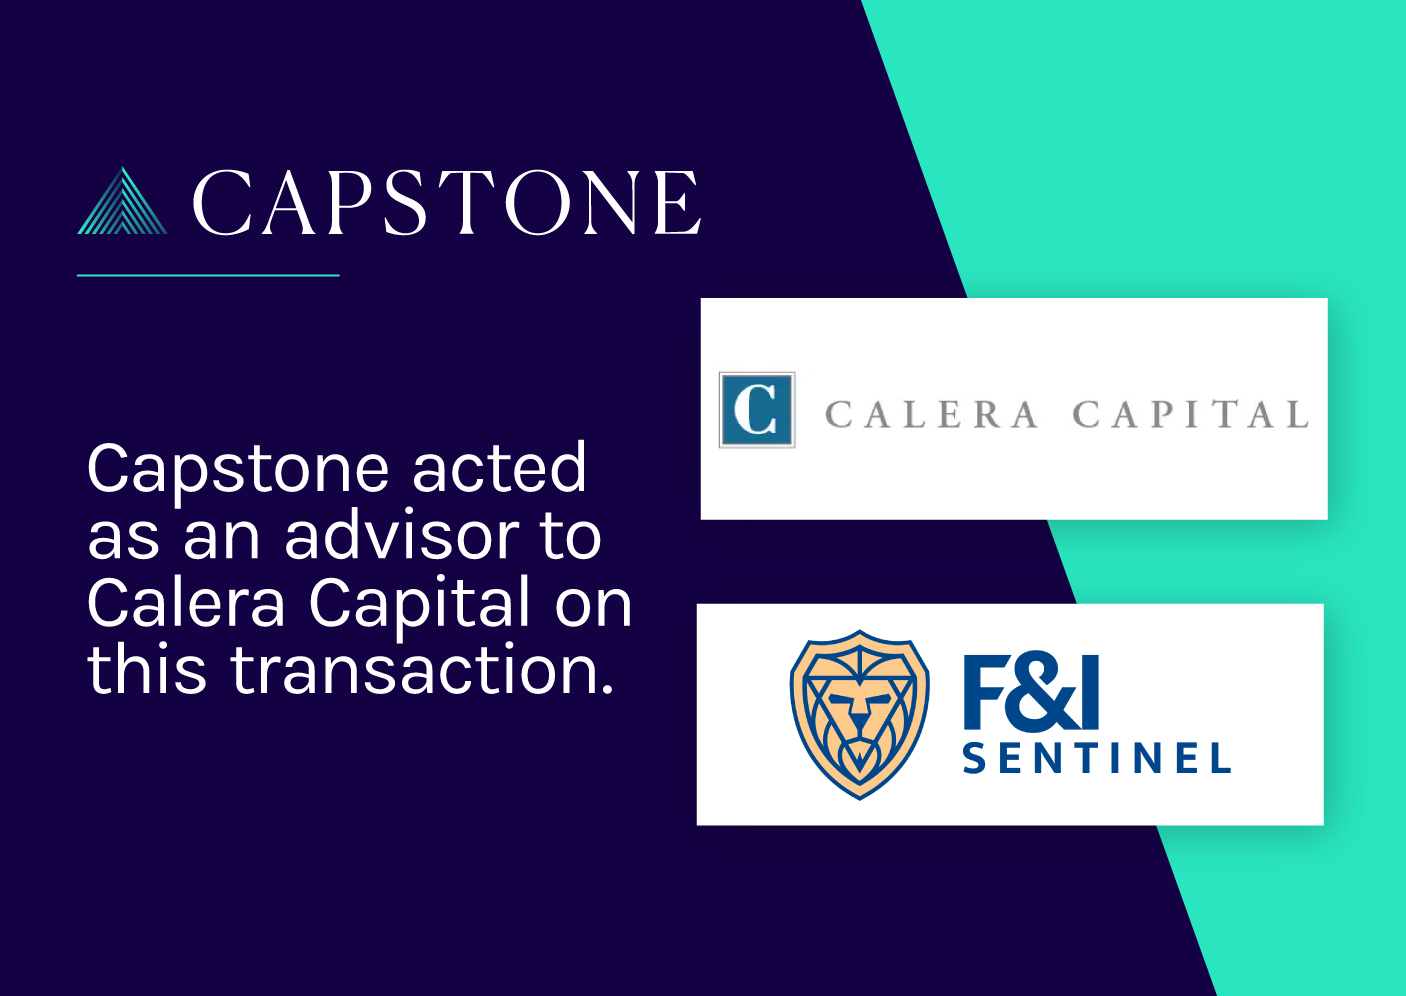 Calera Capital Invests in F&I Sentinel